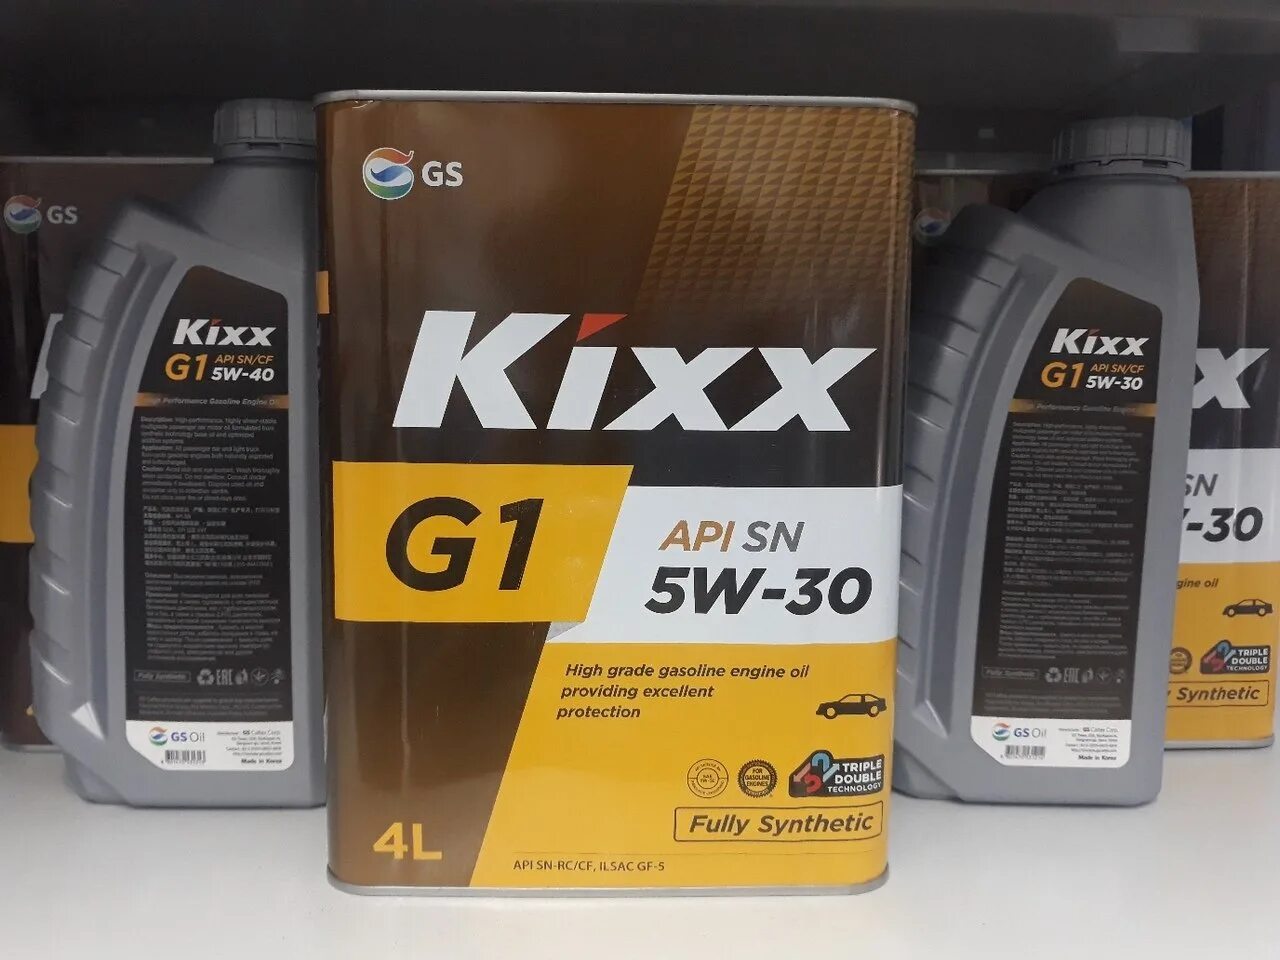 Масла api sn ilsac gf 5. Kixx g1 5w-30 a5/b5. Kixx 5w30 a5/b5. Kixx g1 5w-30 API SN/CF ILSAC gf. Масло Kixx g1 5w-30 API SP.